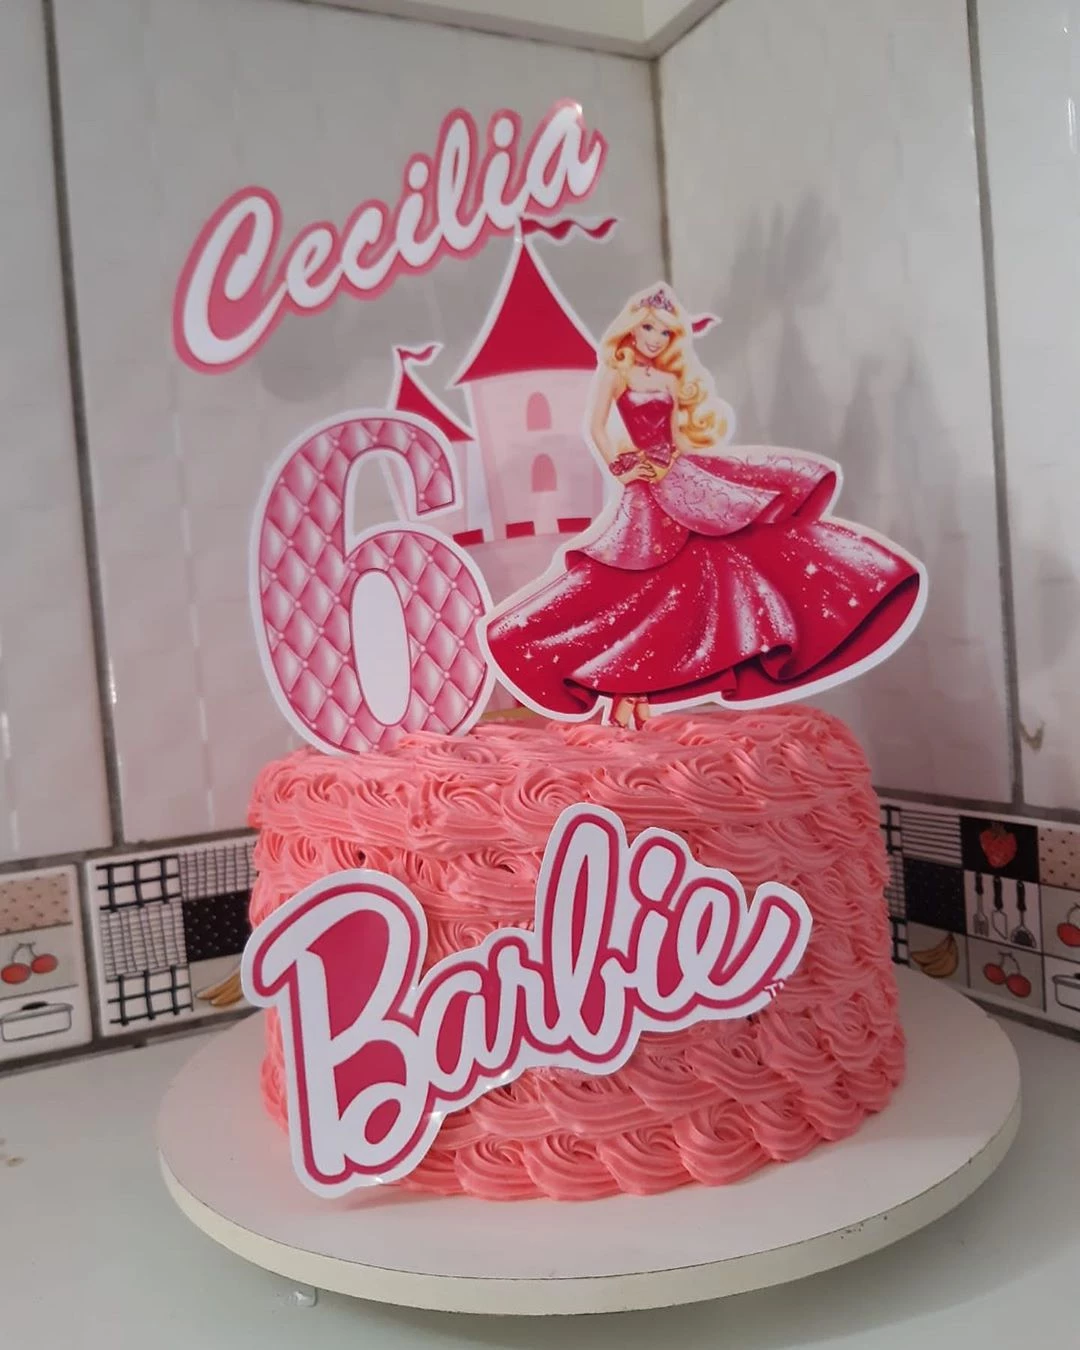 80 modelos de bolo da Barbie para todos os estilos + tutoriais